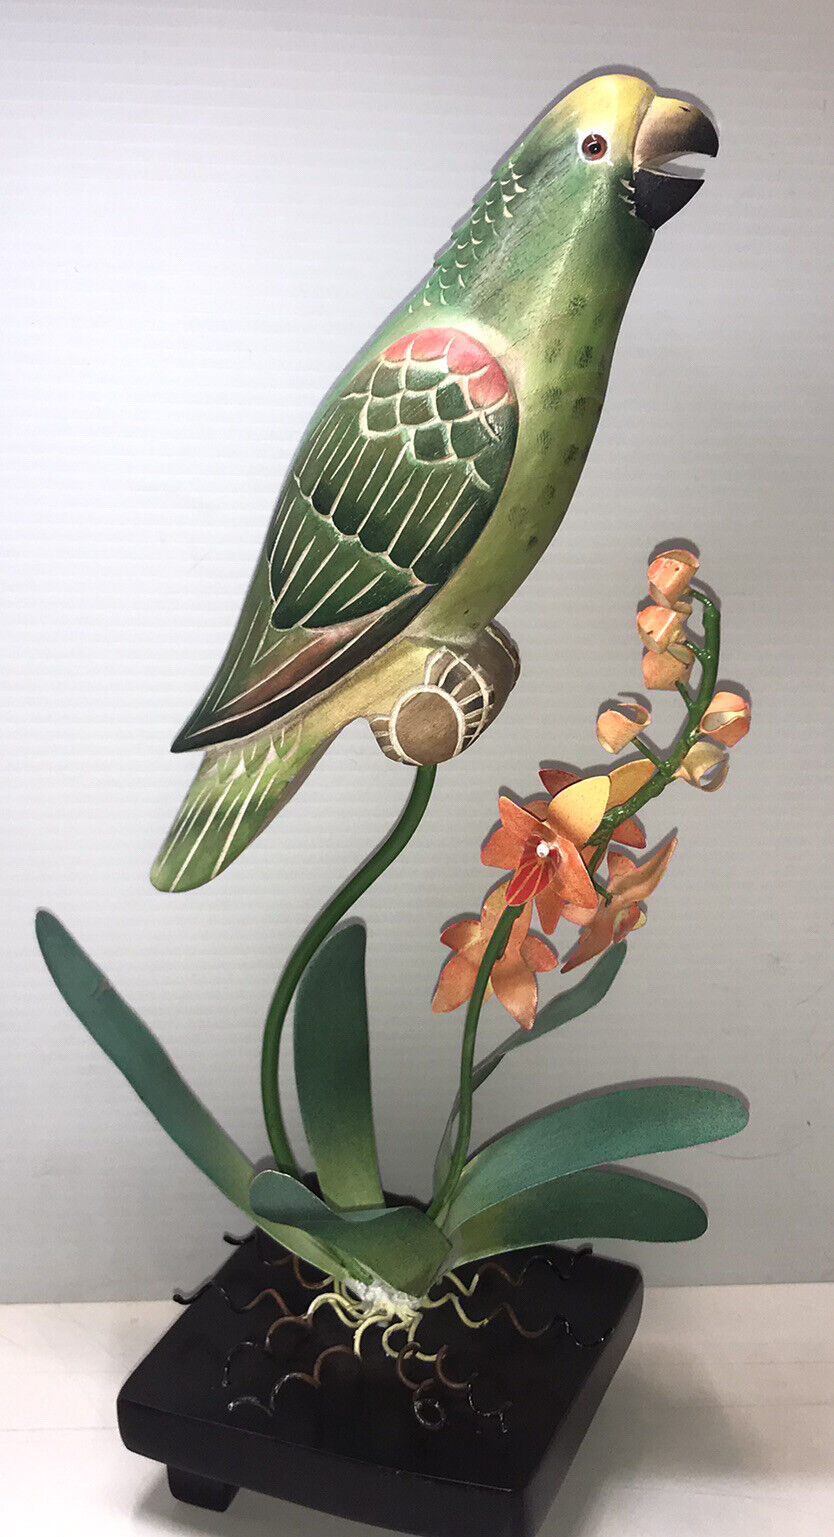 Parrot Decor Wood Carved Amazon Bird Metal Accents Decor Unique Colorful 16” T